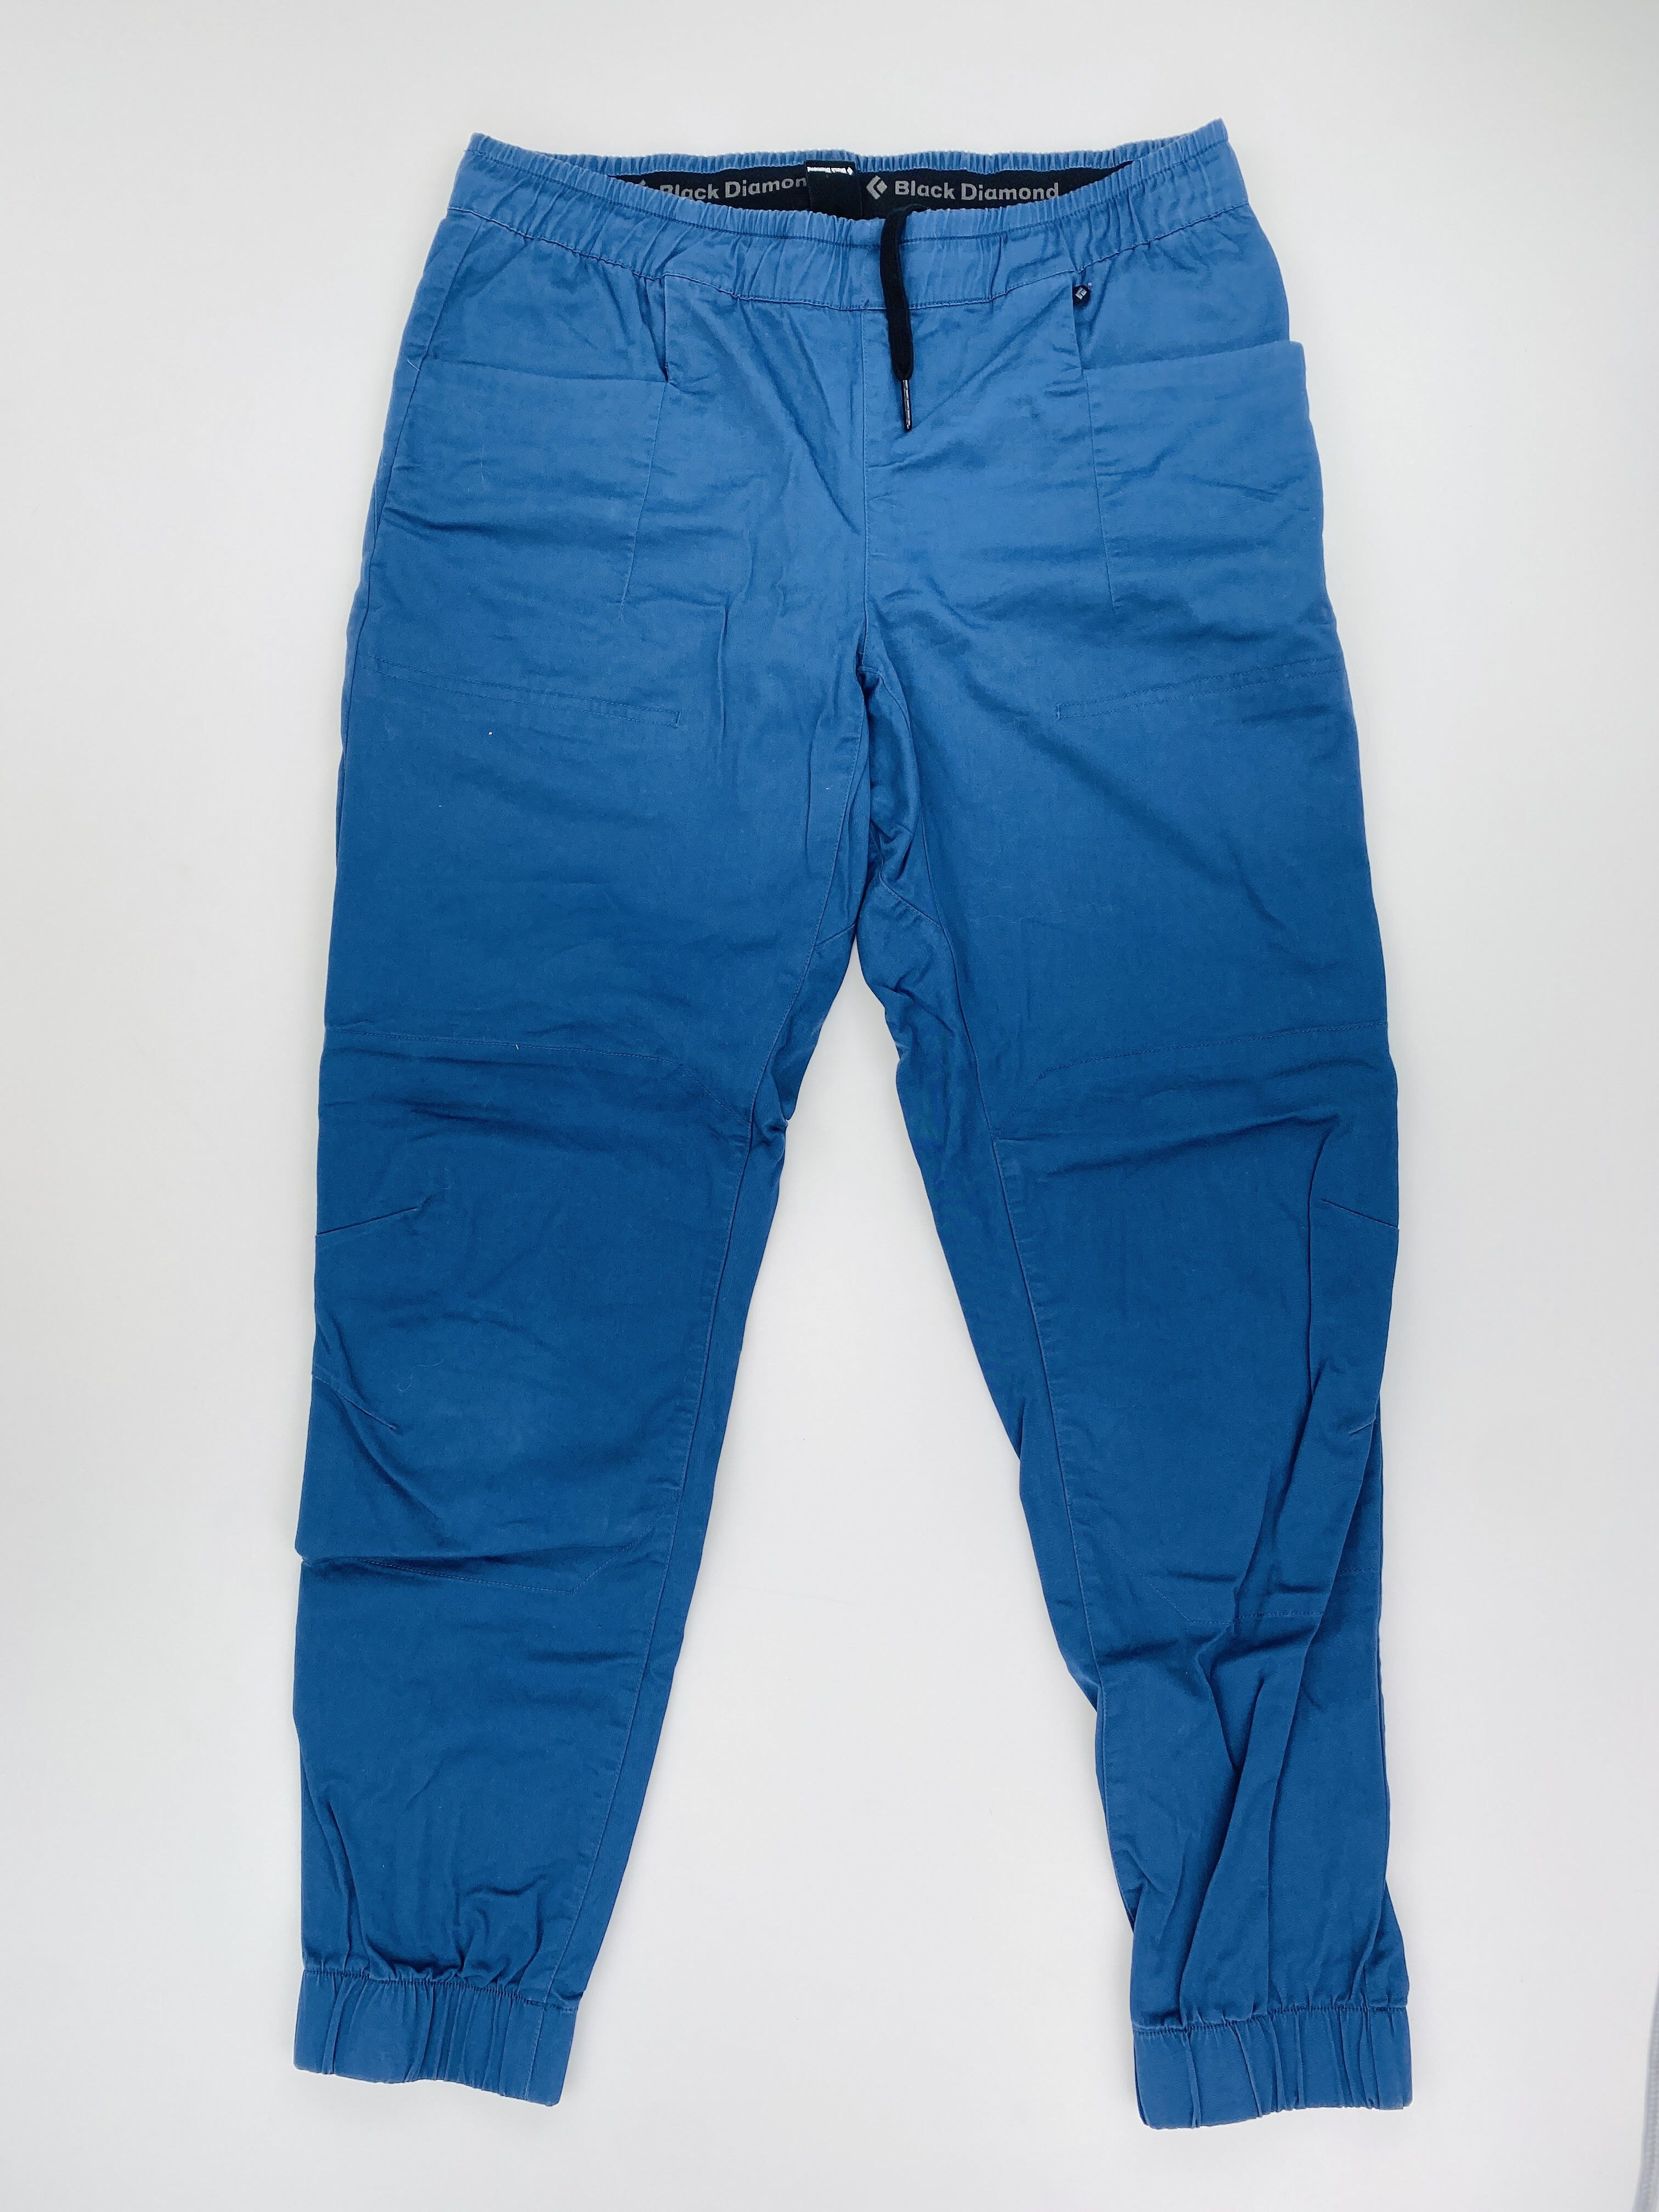 Black Diamond Notion Sp Pant - Second Hand Dámské turistické kalhoty - Modrý - L | Hardloop